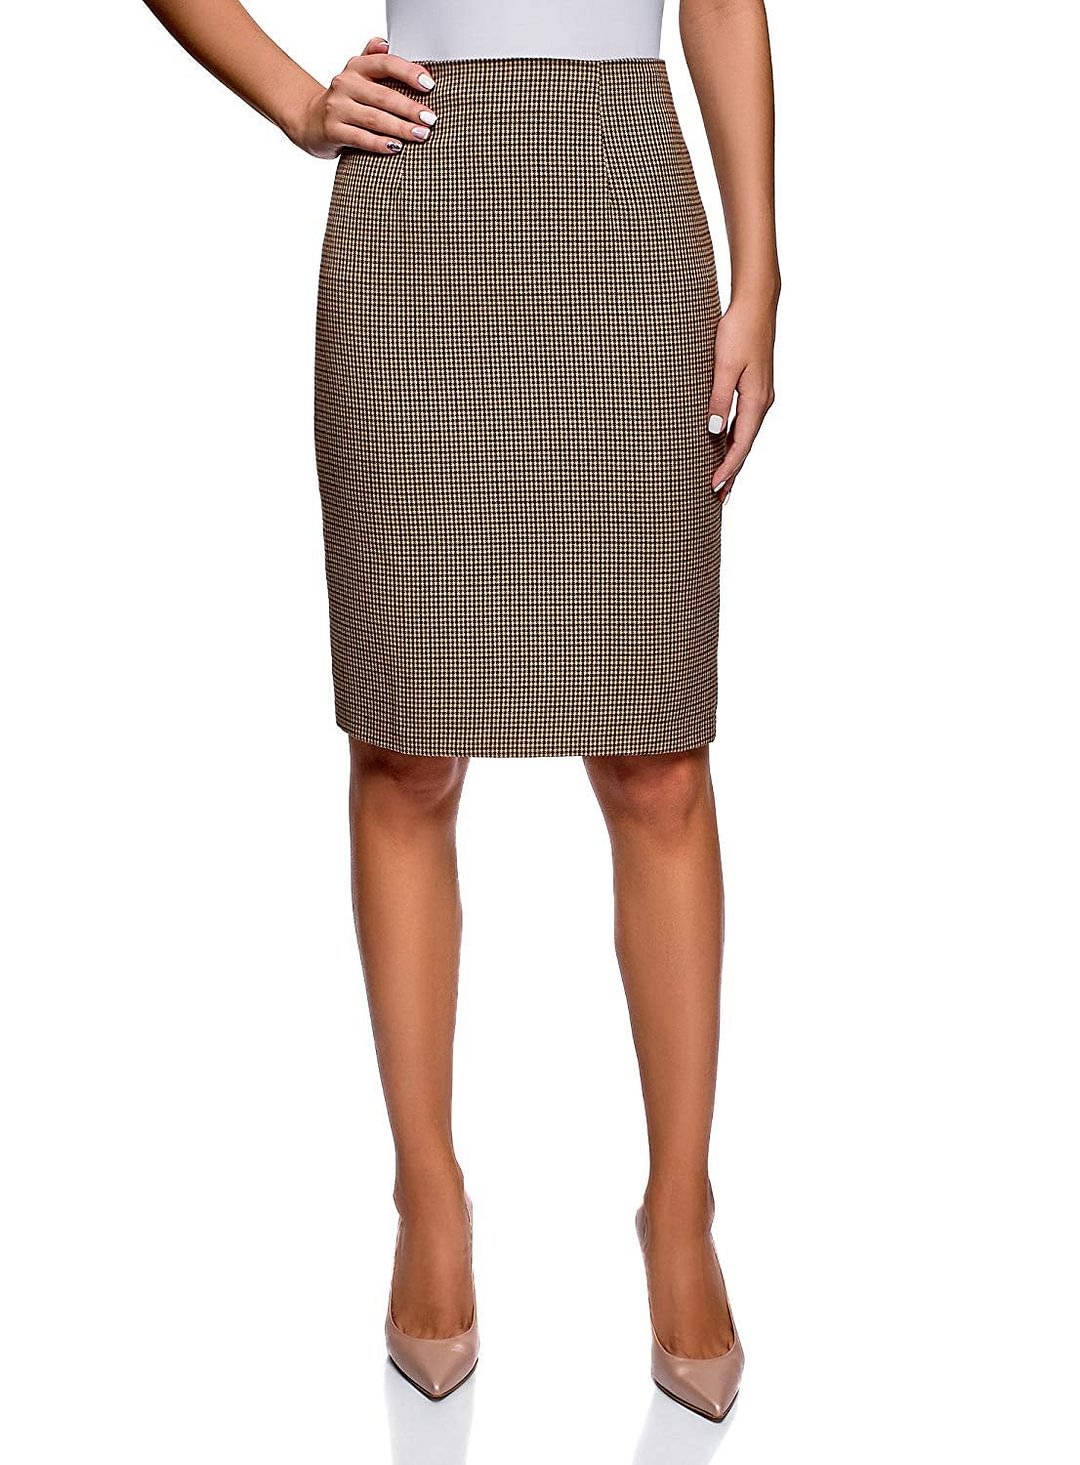 Elegant above-knee pencil skirt Women's Basic Pencil Skirt